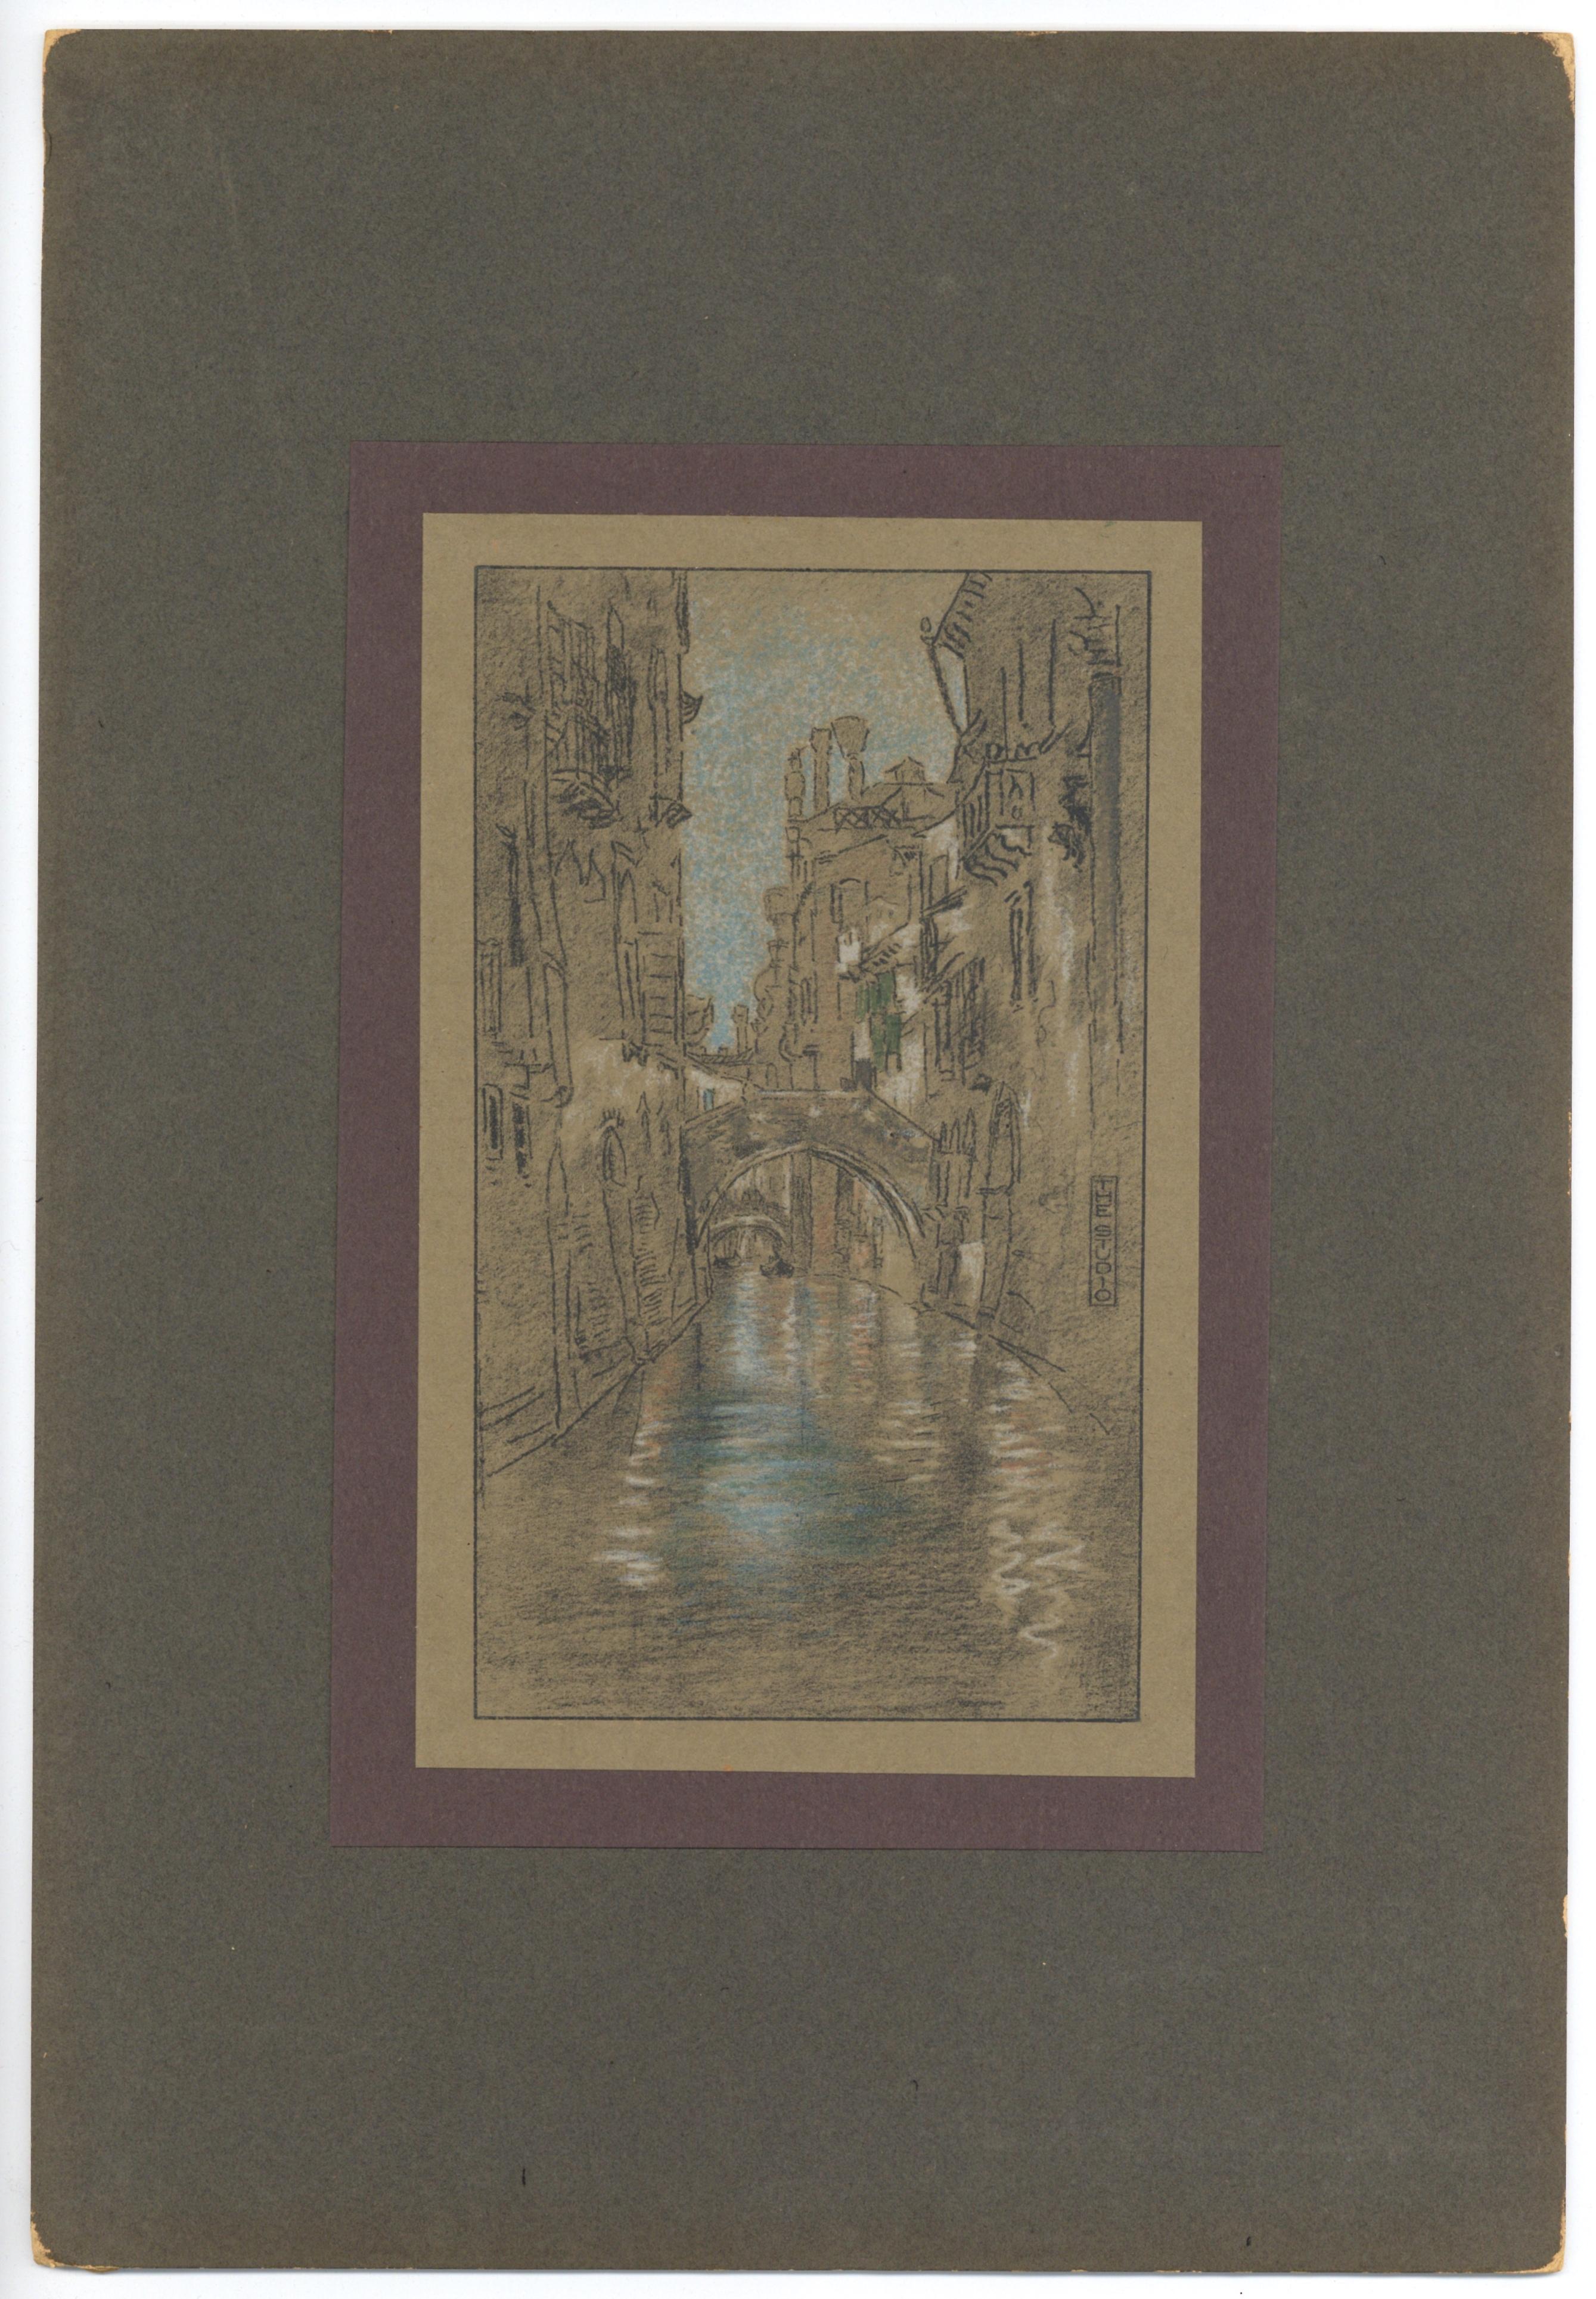 Medium: Lithographie (nach dem Pastell). Die Lithografie wurde von Whistlers Freund und Künstlerkollegen Thomas Way ausgeführt und 1905 in London von The Studio in einer seltenen Luxusmappe veröffentlicht. Die Lithographie ist auf glattem Velin